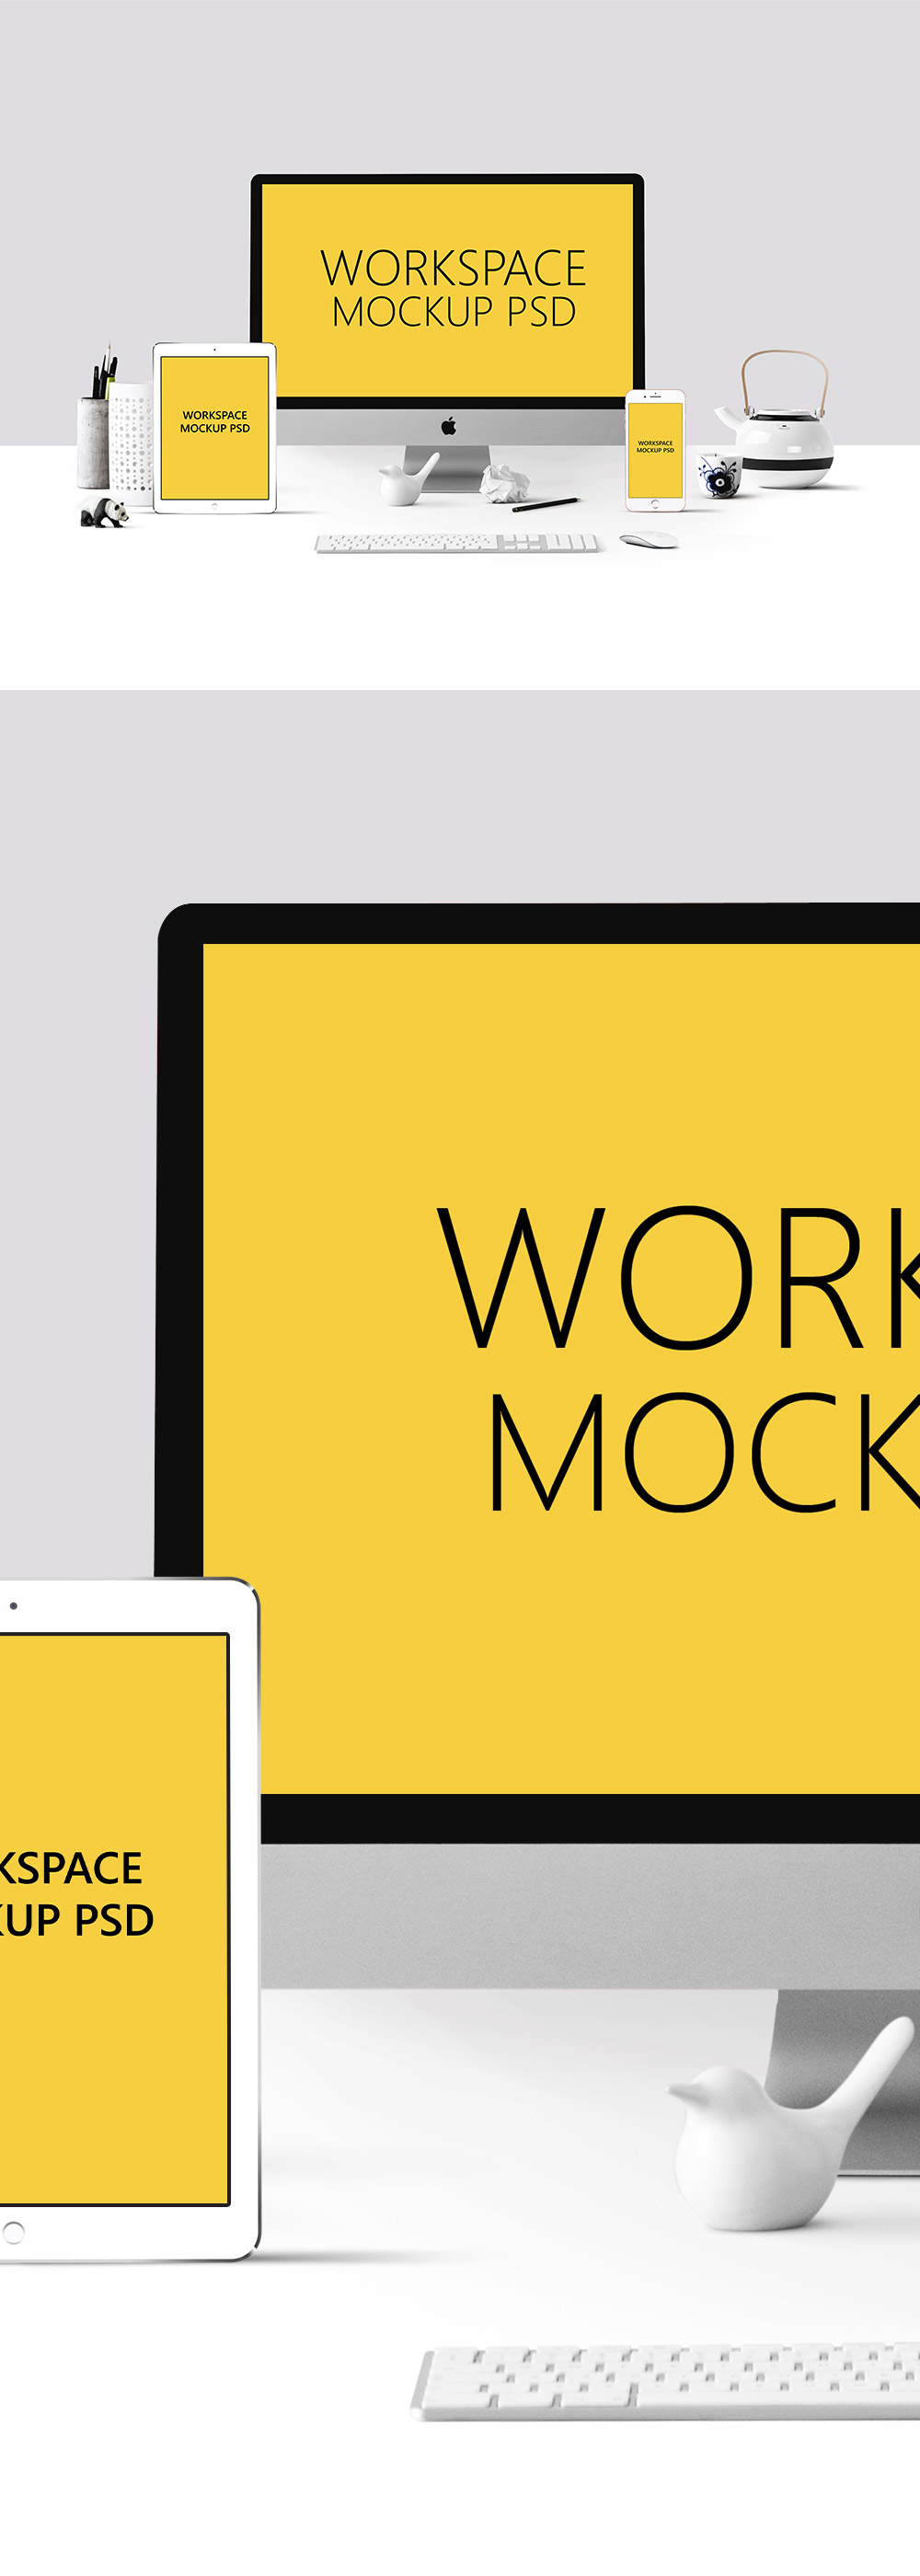 工作场景的响应式网站展示模型(Mockup)设计素材模板